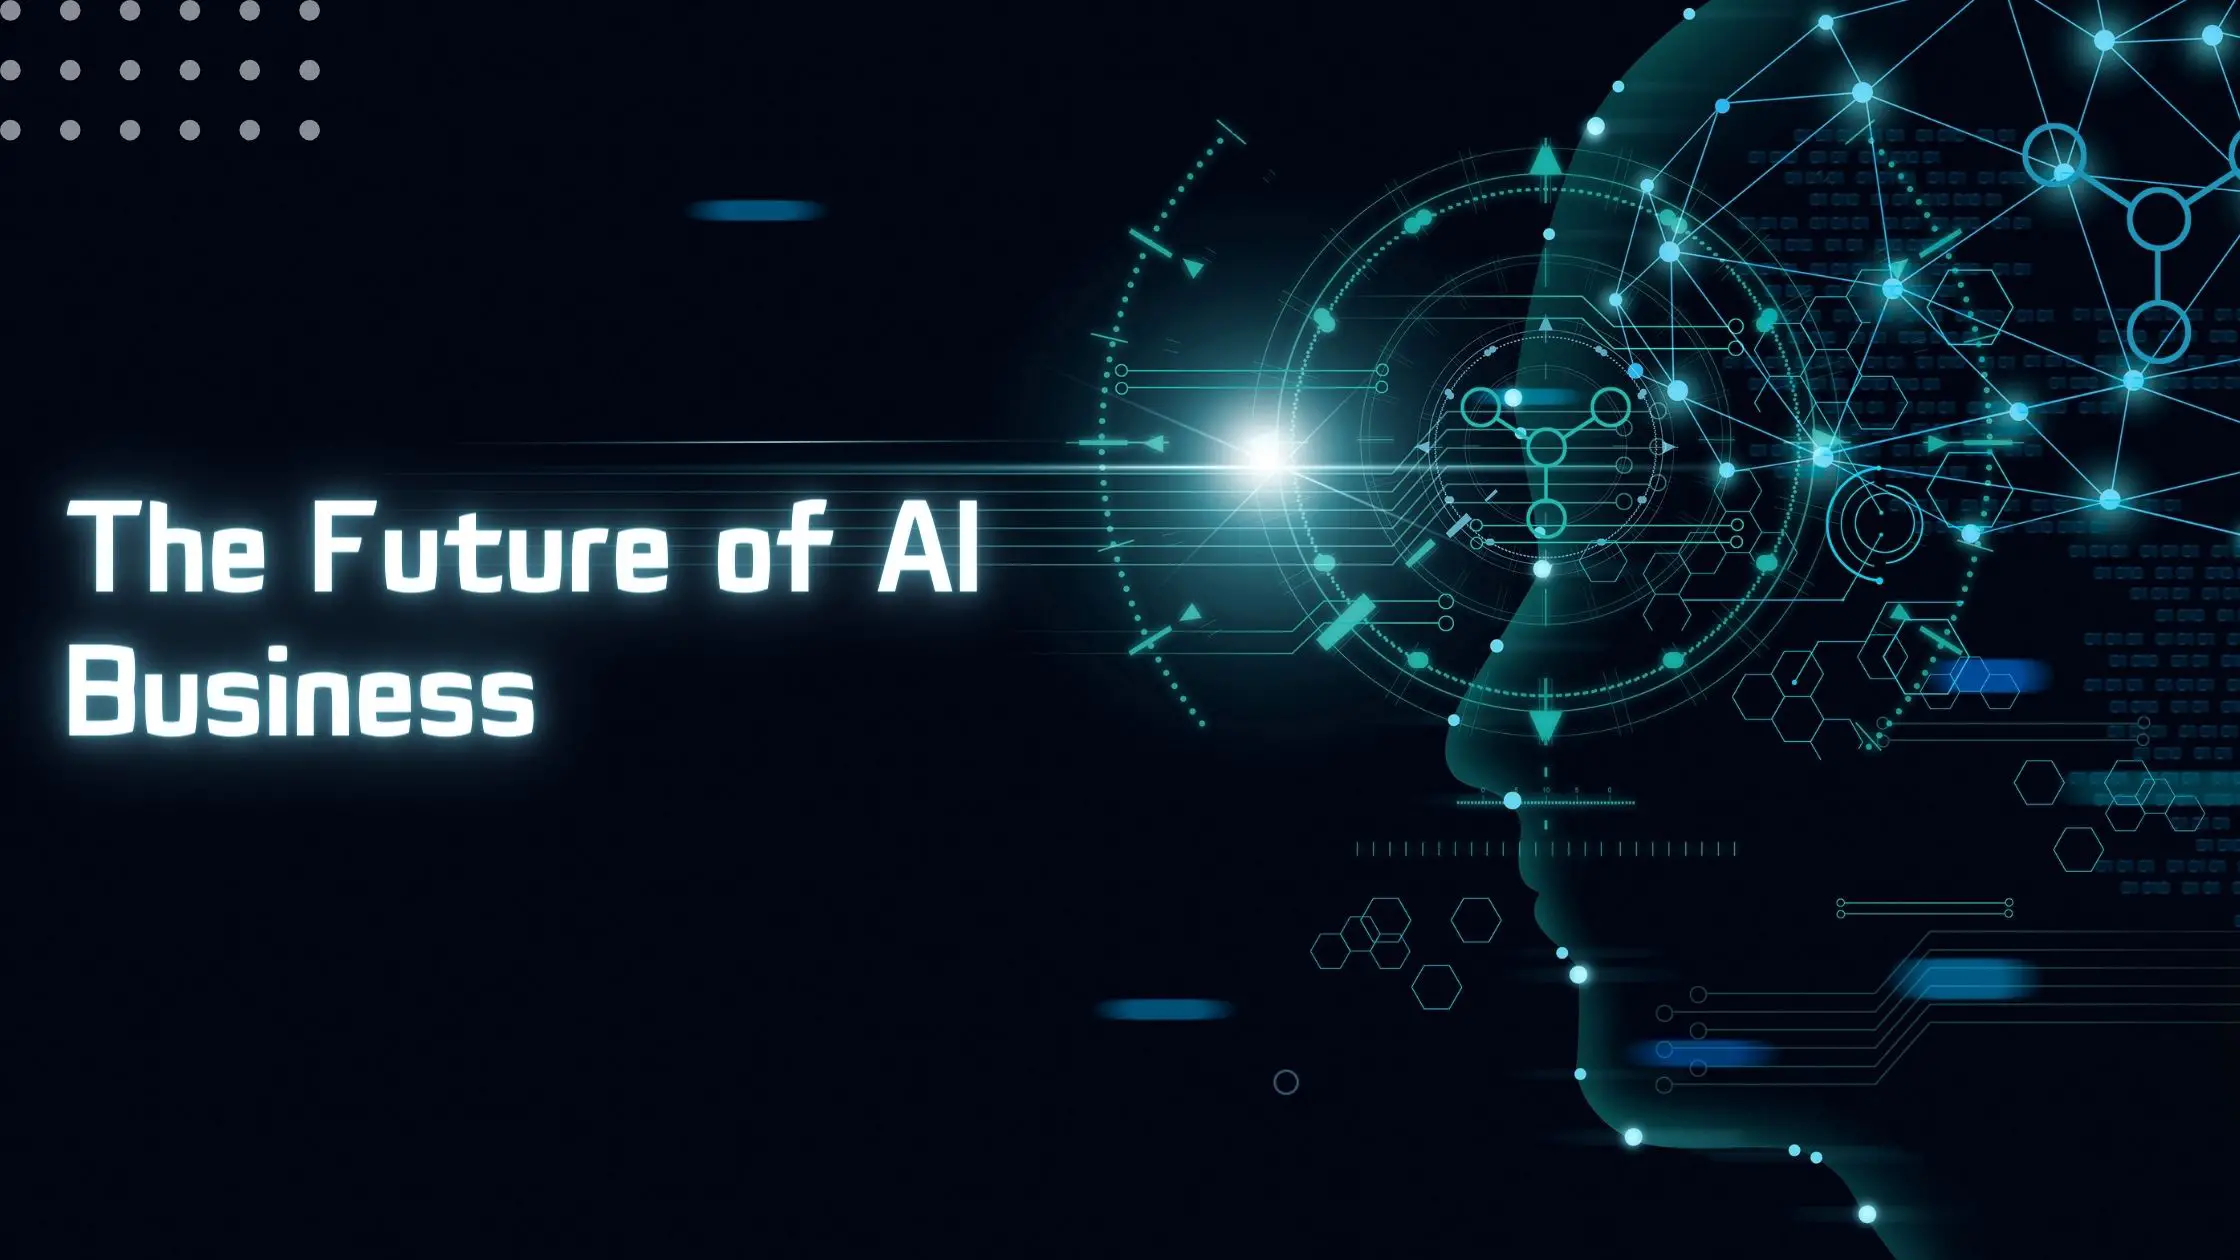 The Future of AI Business